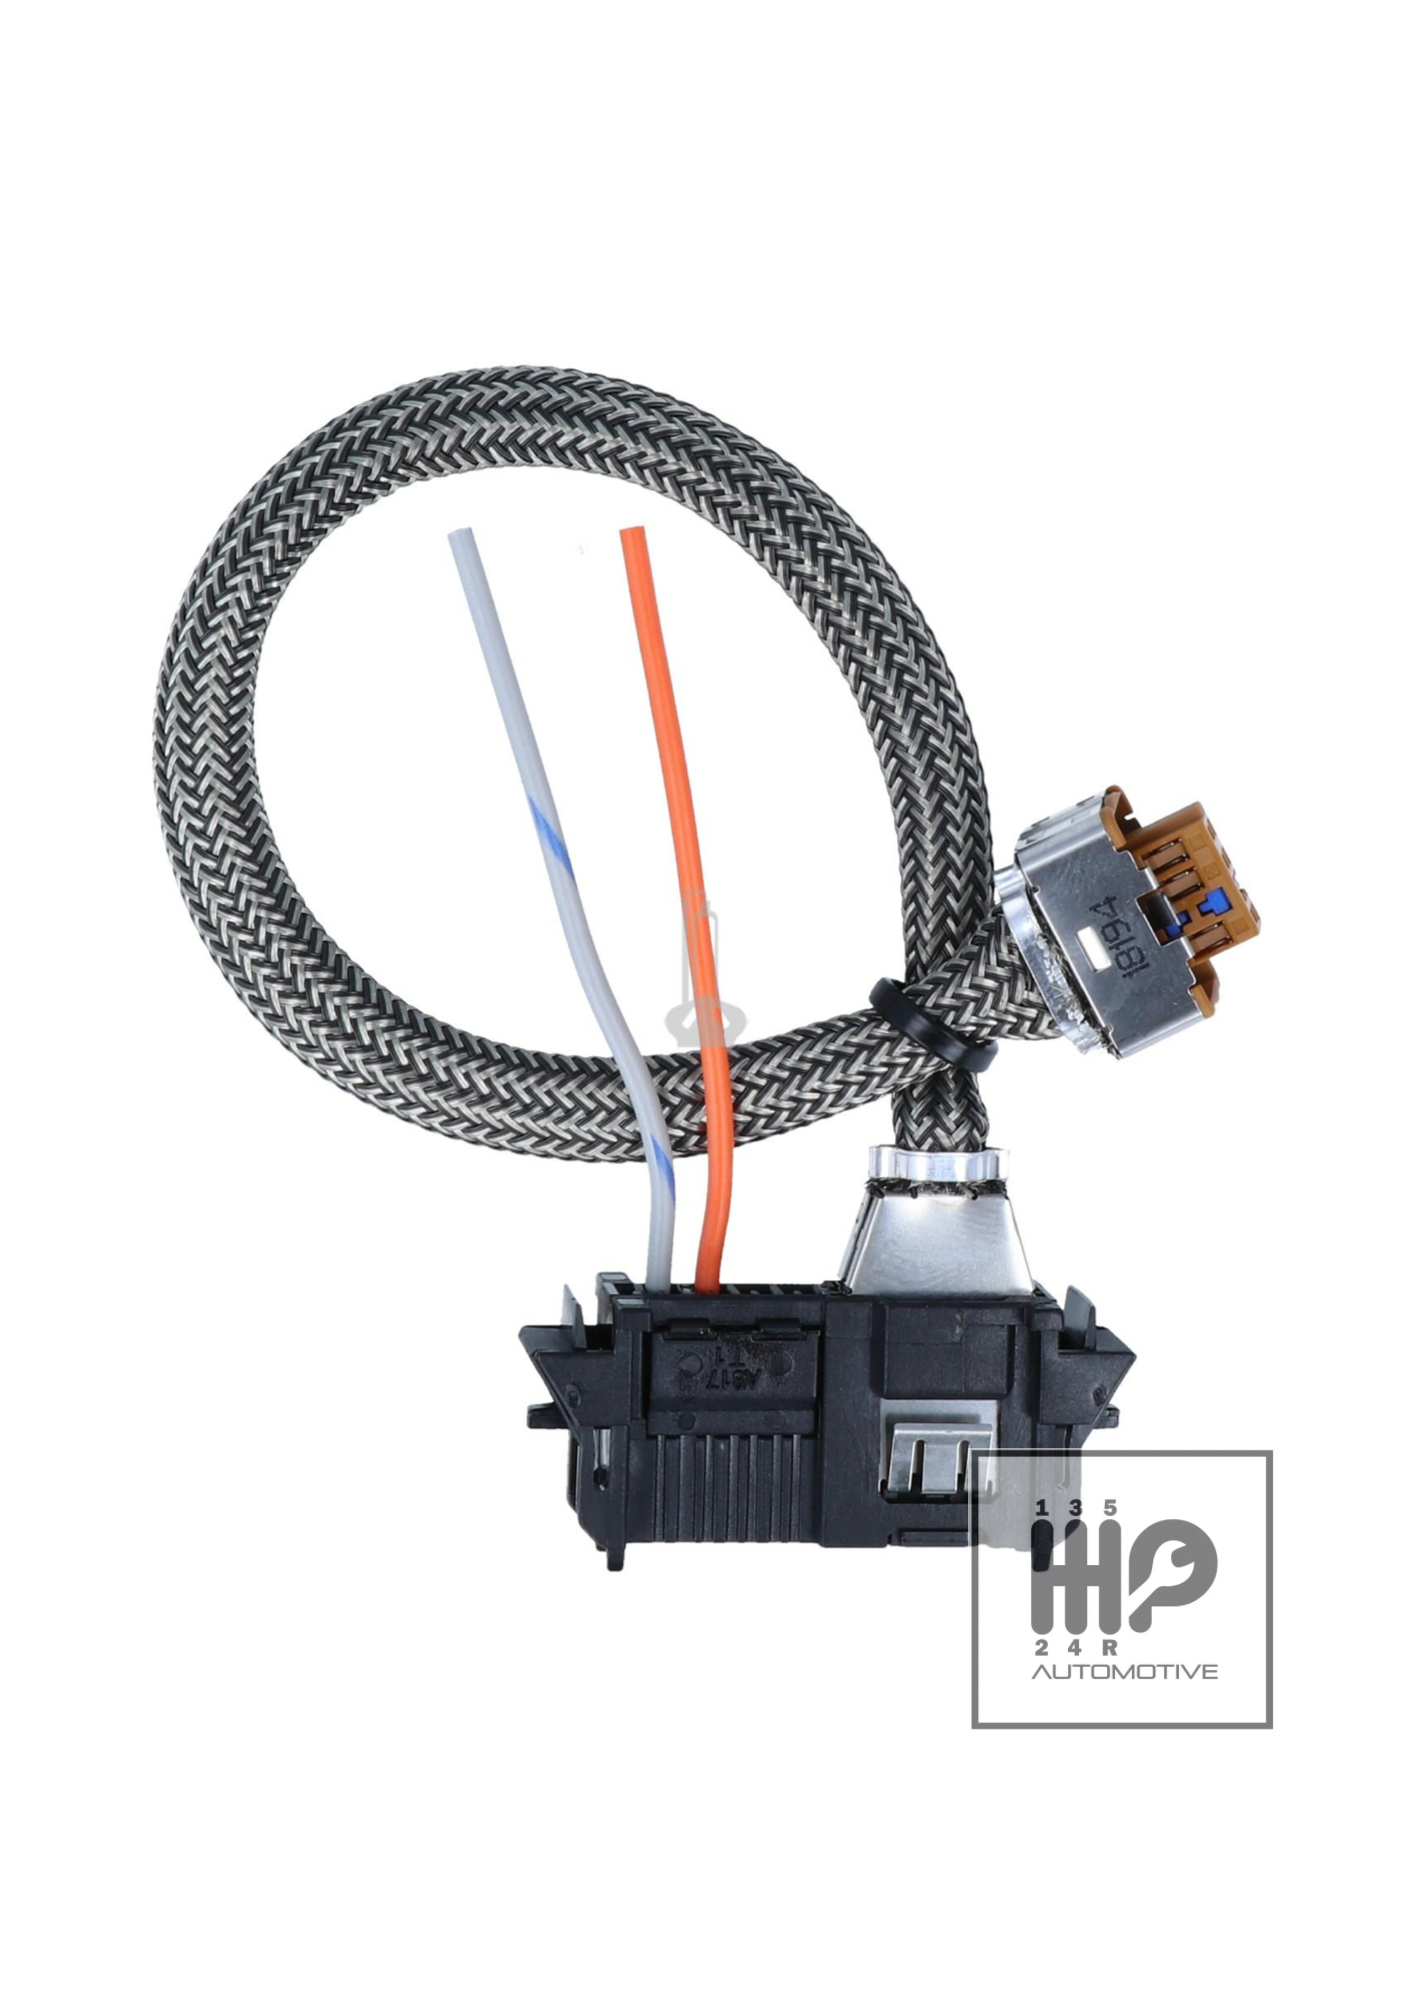 Enchufe cable xenon para VALEO 6g 89034934 BMW SEAT RENAULT